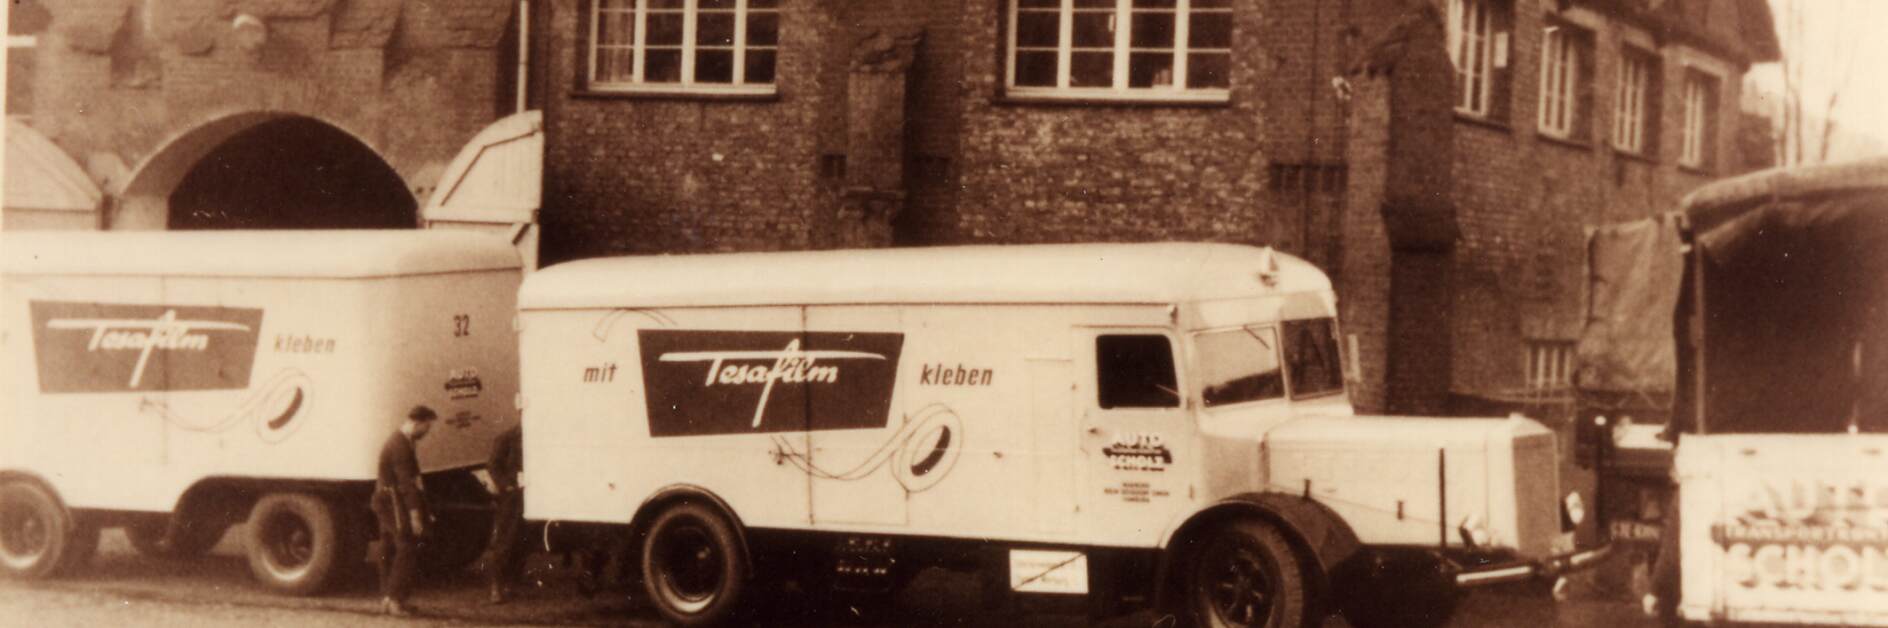 tesa Lastwagen mit tesafilm® Werbung aus 1952